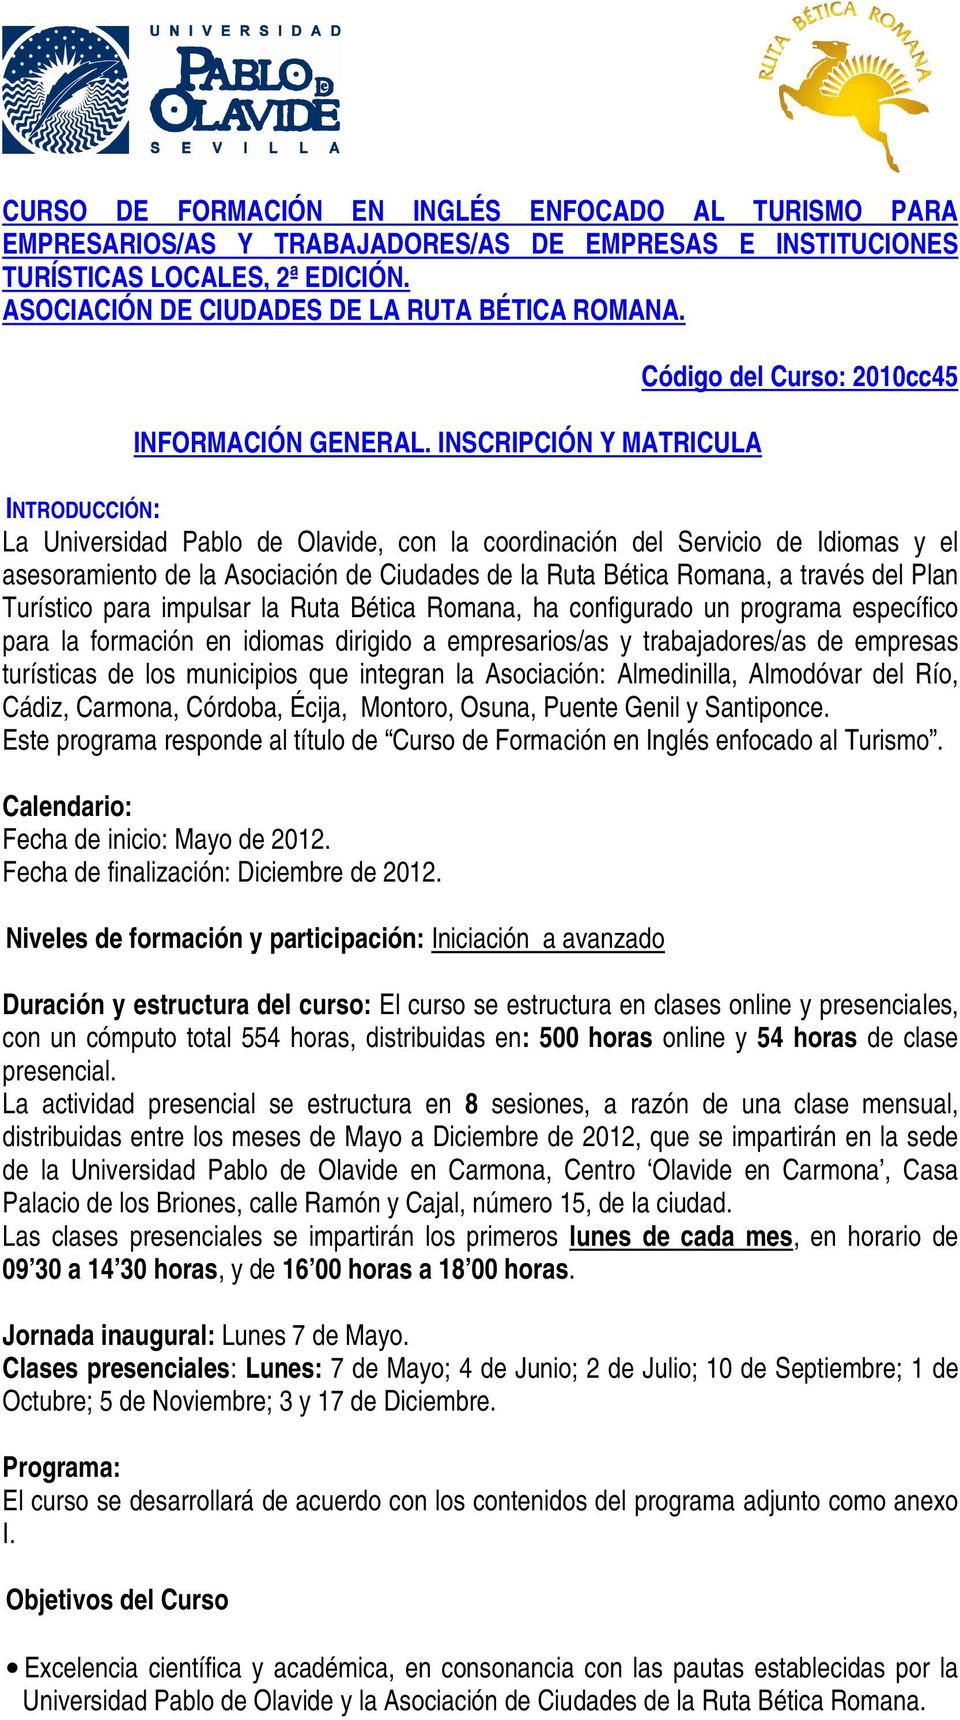 INSCRIPCIÓN Y MATRICULA Código del Curso: 2010cc45 INTRODUCCIÓN: La Universidad Pablo de Olavide, con la coordinación del Servicio de Idiomas y el asesoramiento de la Asociación de Ciudades de la